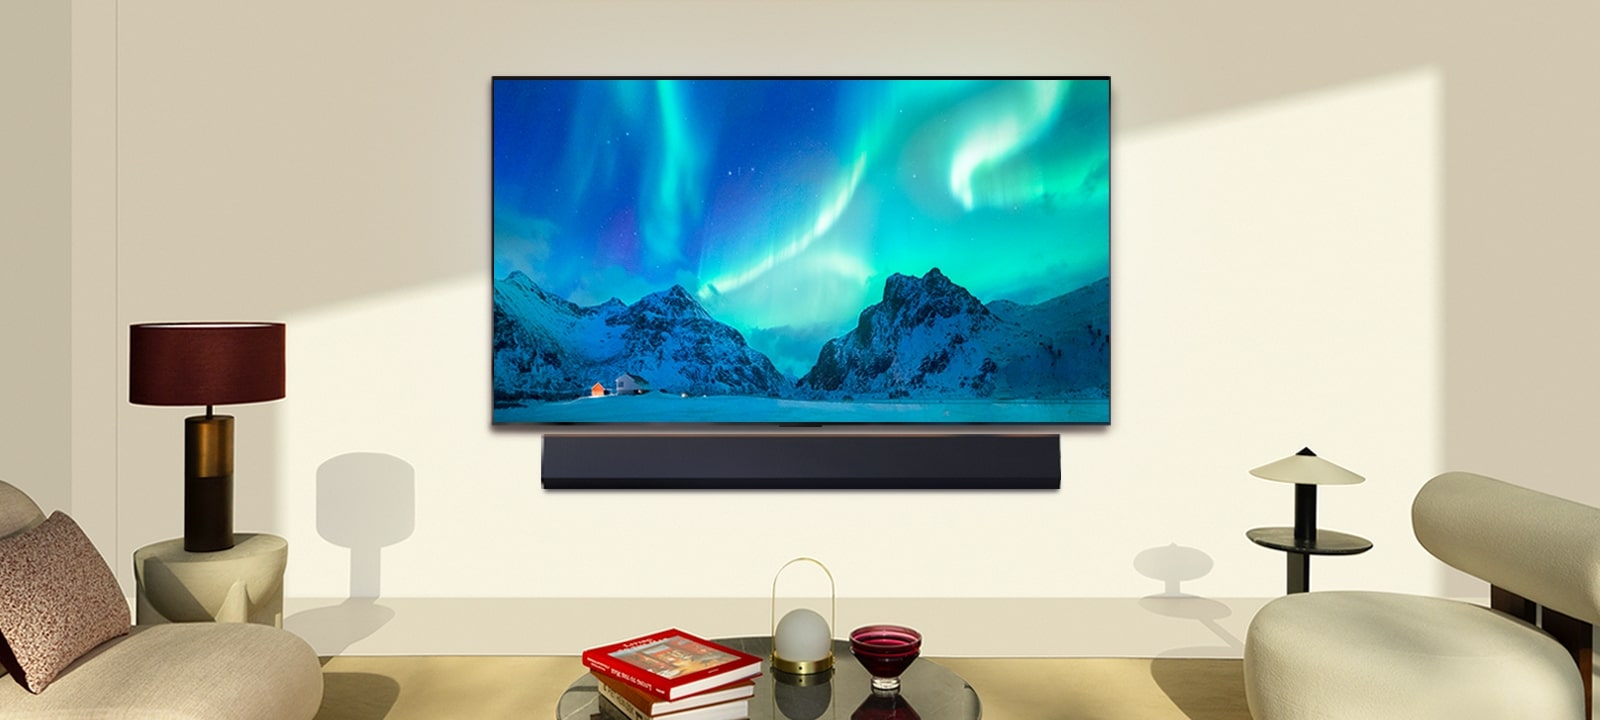 Un TV LG OLED e una soundbar LG in uno spazio abitativo moderno durante il giorno. L'immagine sullo schermo dell'aurora boreale viene visualizzata con i livelli di luminosità ideali.